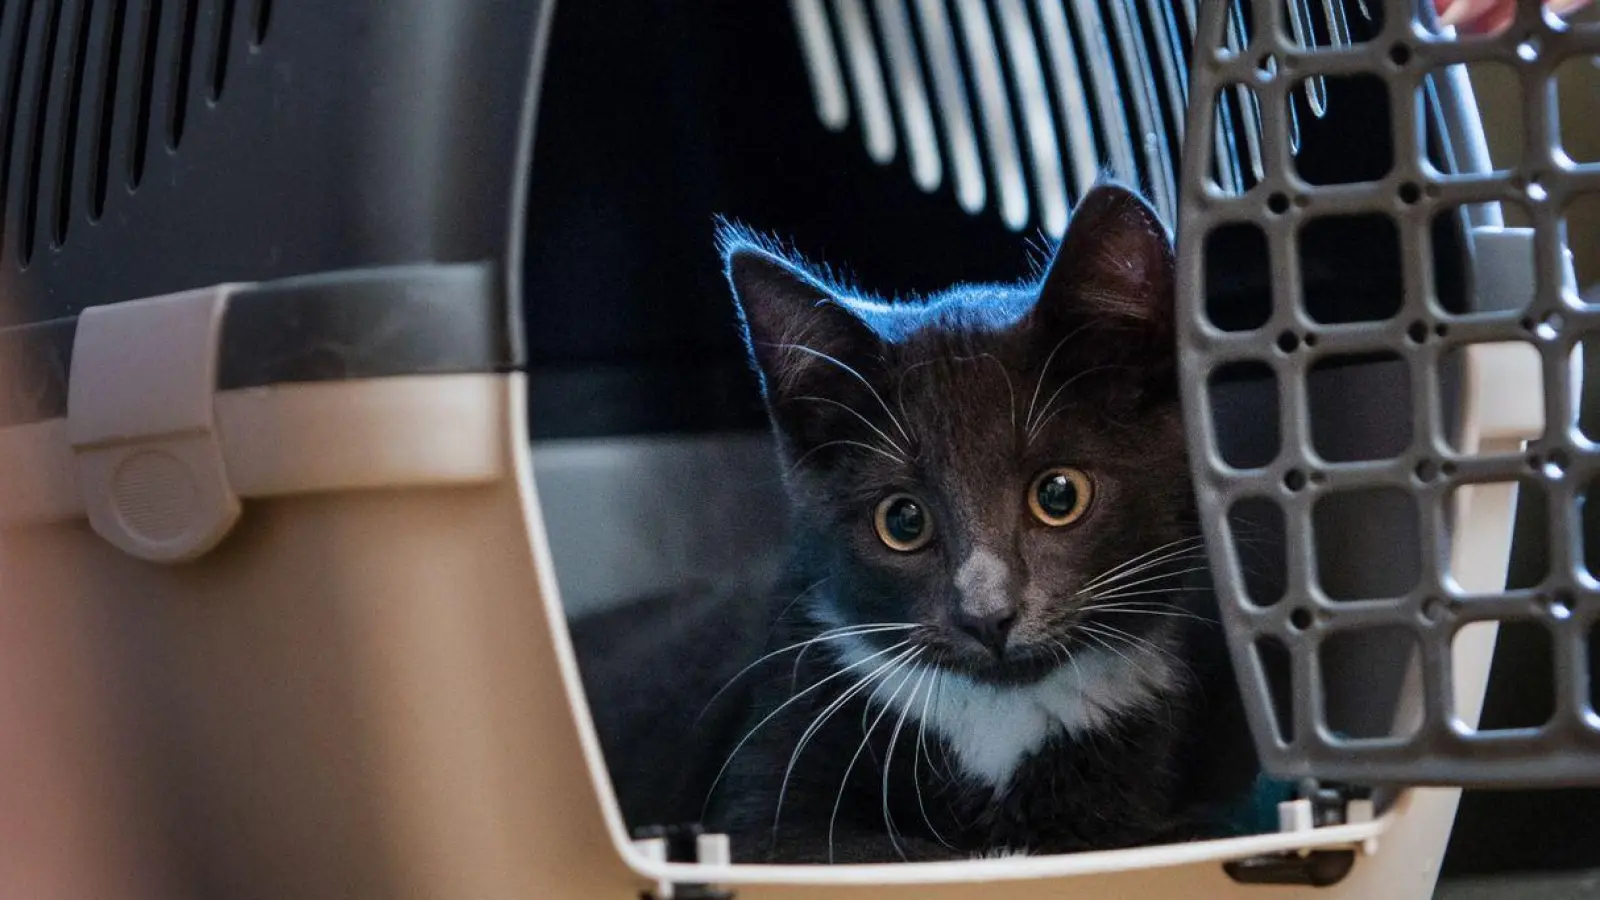 Über einen Futtertrick kann man die Katze mit der Transportbox anfreunden - das sollte allerdings schon einige Tage vor dem Einsatz der Box geübt werden. (Foto: Christin Klose/dpa-tmn/dpa)